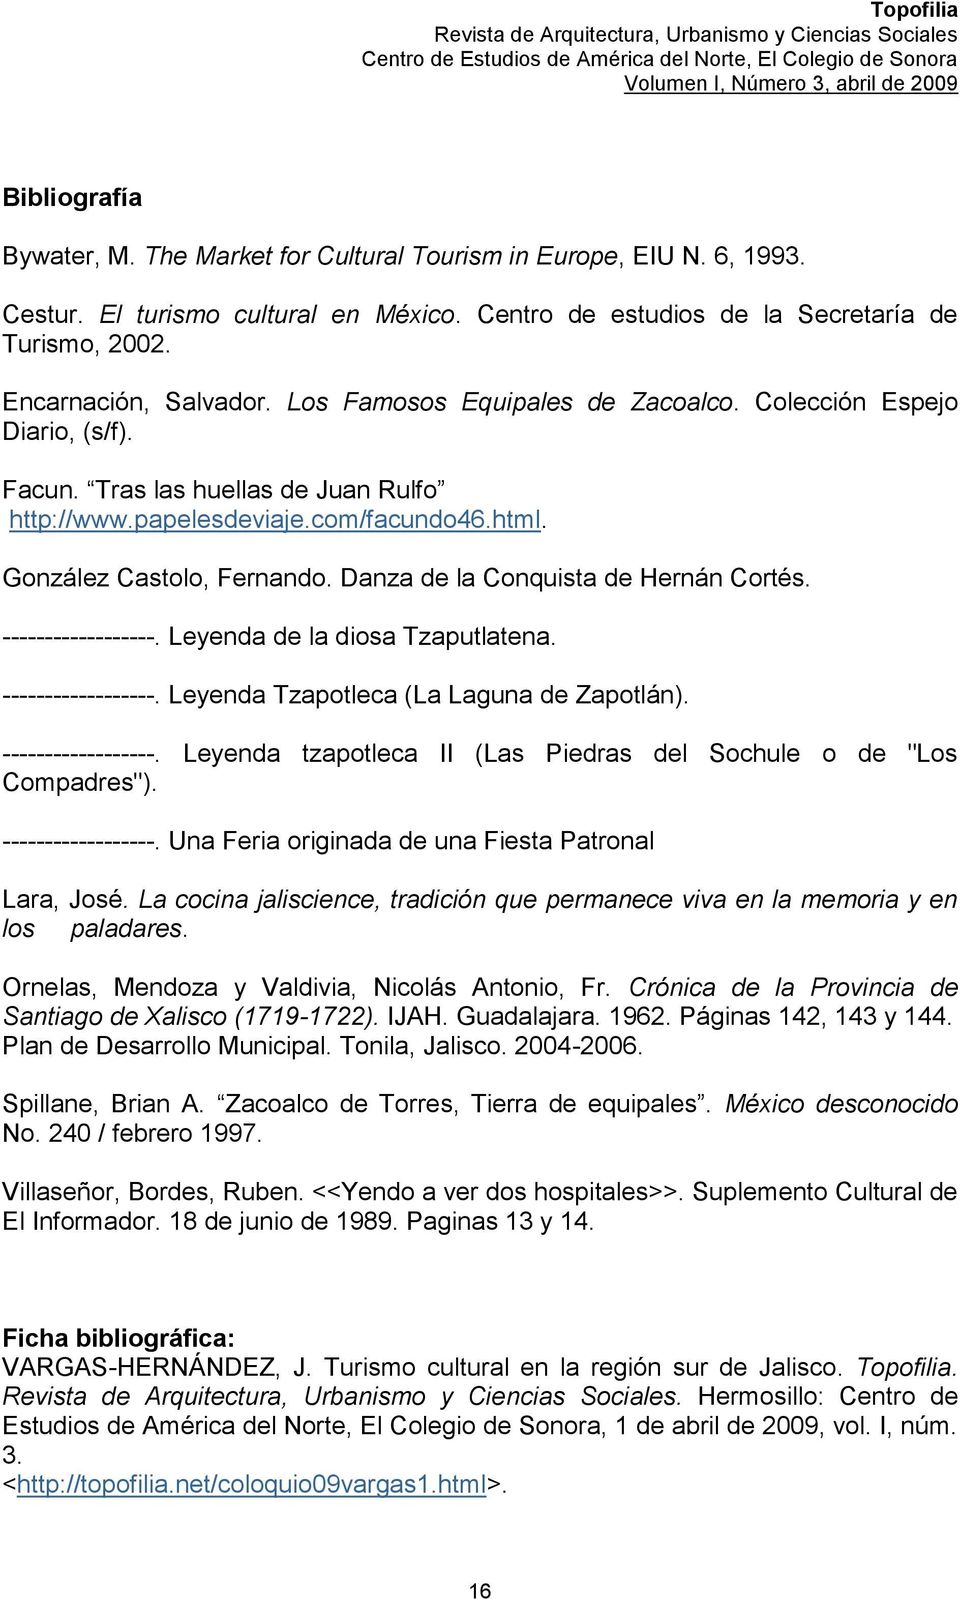 Danza de la Conquista de Hernán Cortés. ------------------. Leyenda de la diosa Tzaputlatena. ------------------. Leyenda Tzapotleca (La Laguna de Zapotlán). ------------------. Leyenda tzapotleca II (Las Piedras del Sochule o de "Los Compadres").